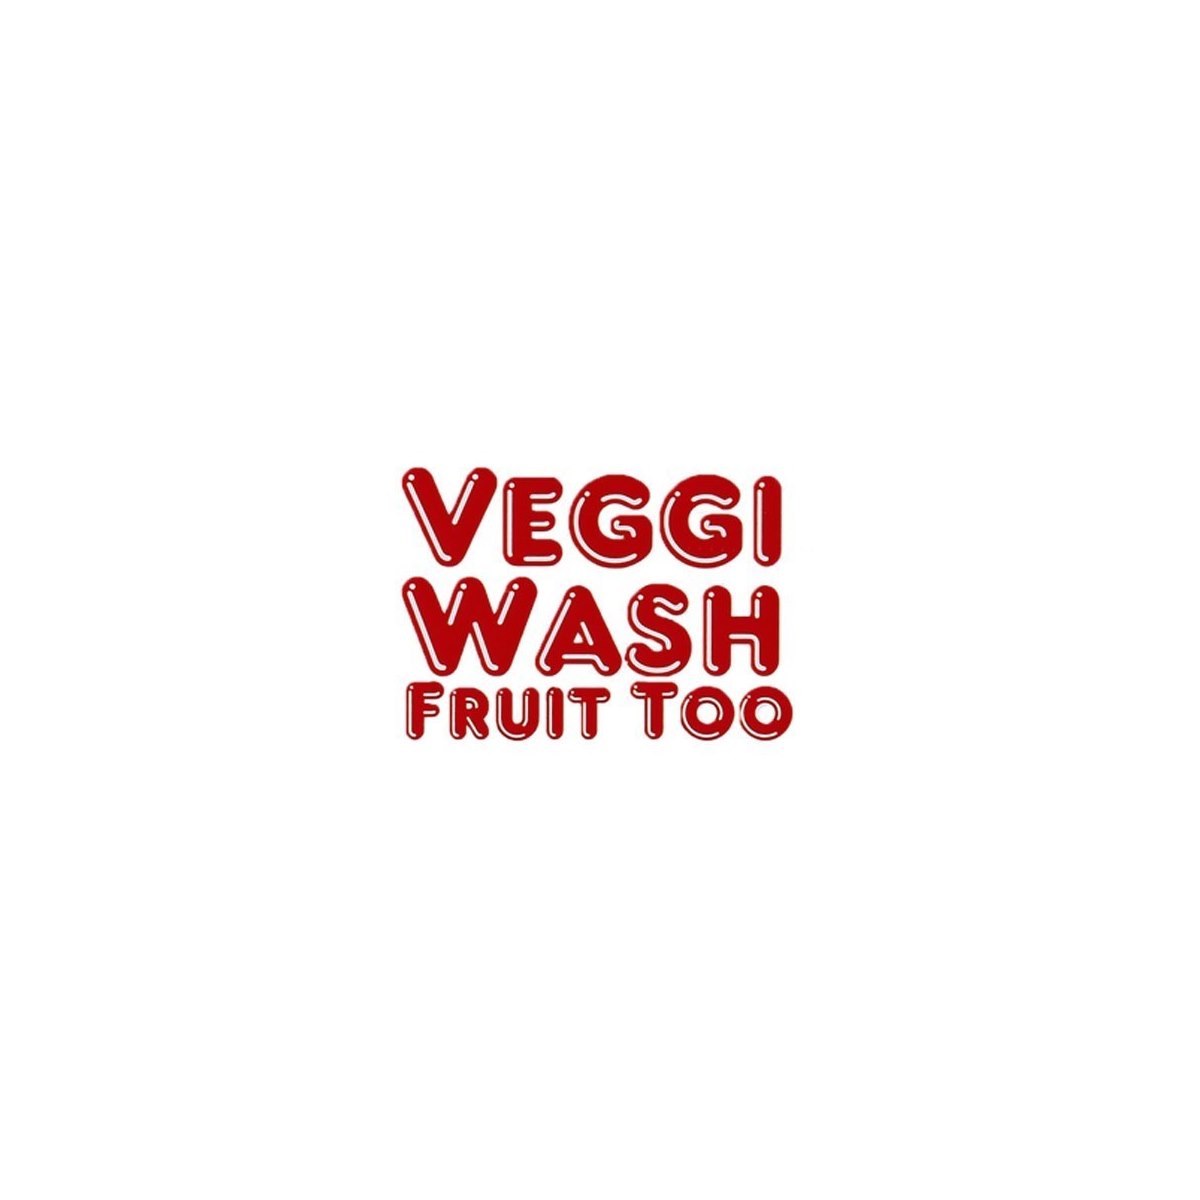 Where to Buy Veggi Wash